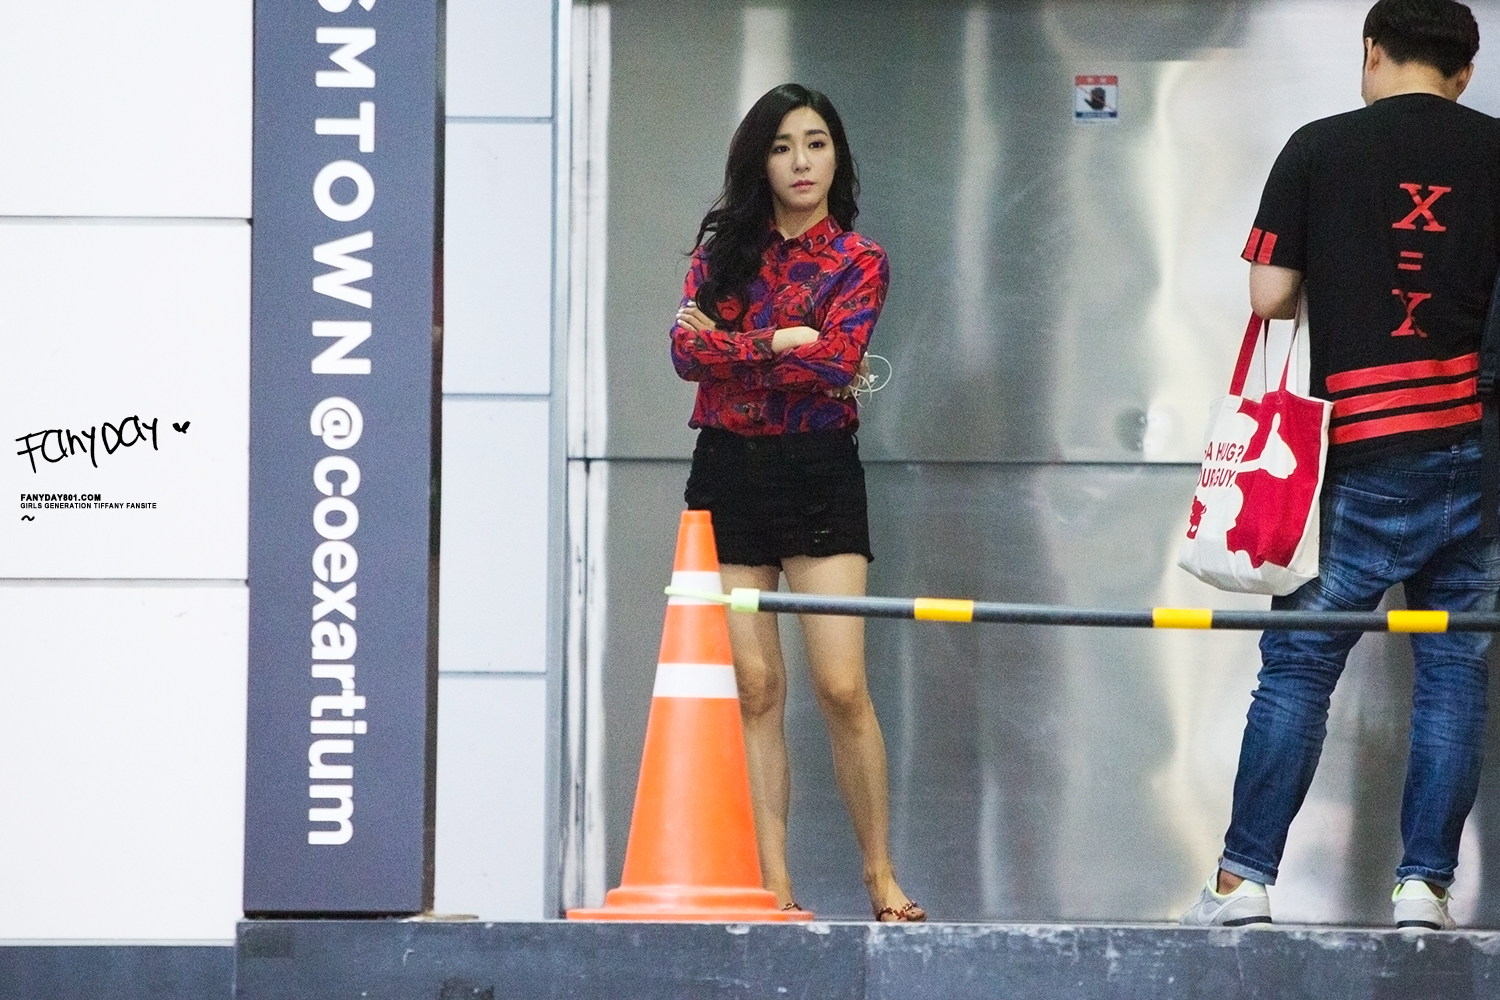 [PIC][23-08-2015]Tiffany - HyoYeon - Yuri và Sunny xuất hiện tại SMCOEX để ghi hình cho chương trình “Better Late Than Never” vào tối nay 21279096182_f12503ffd1_o